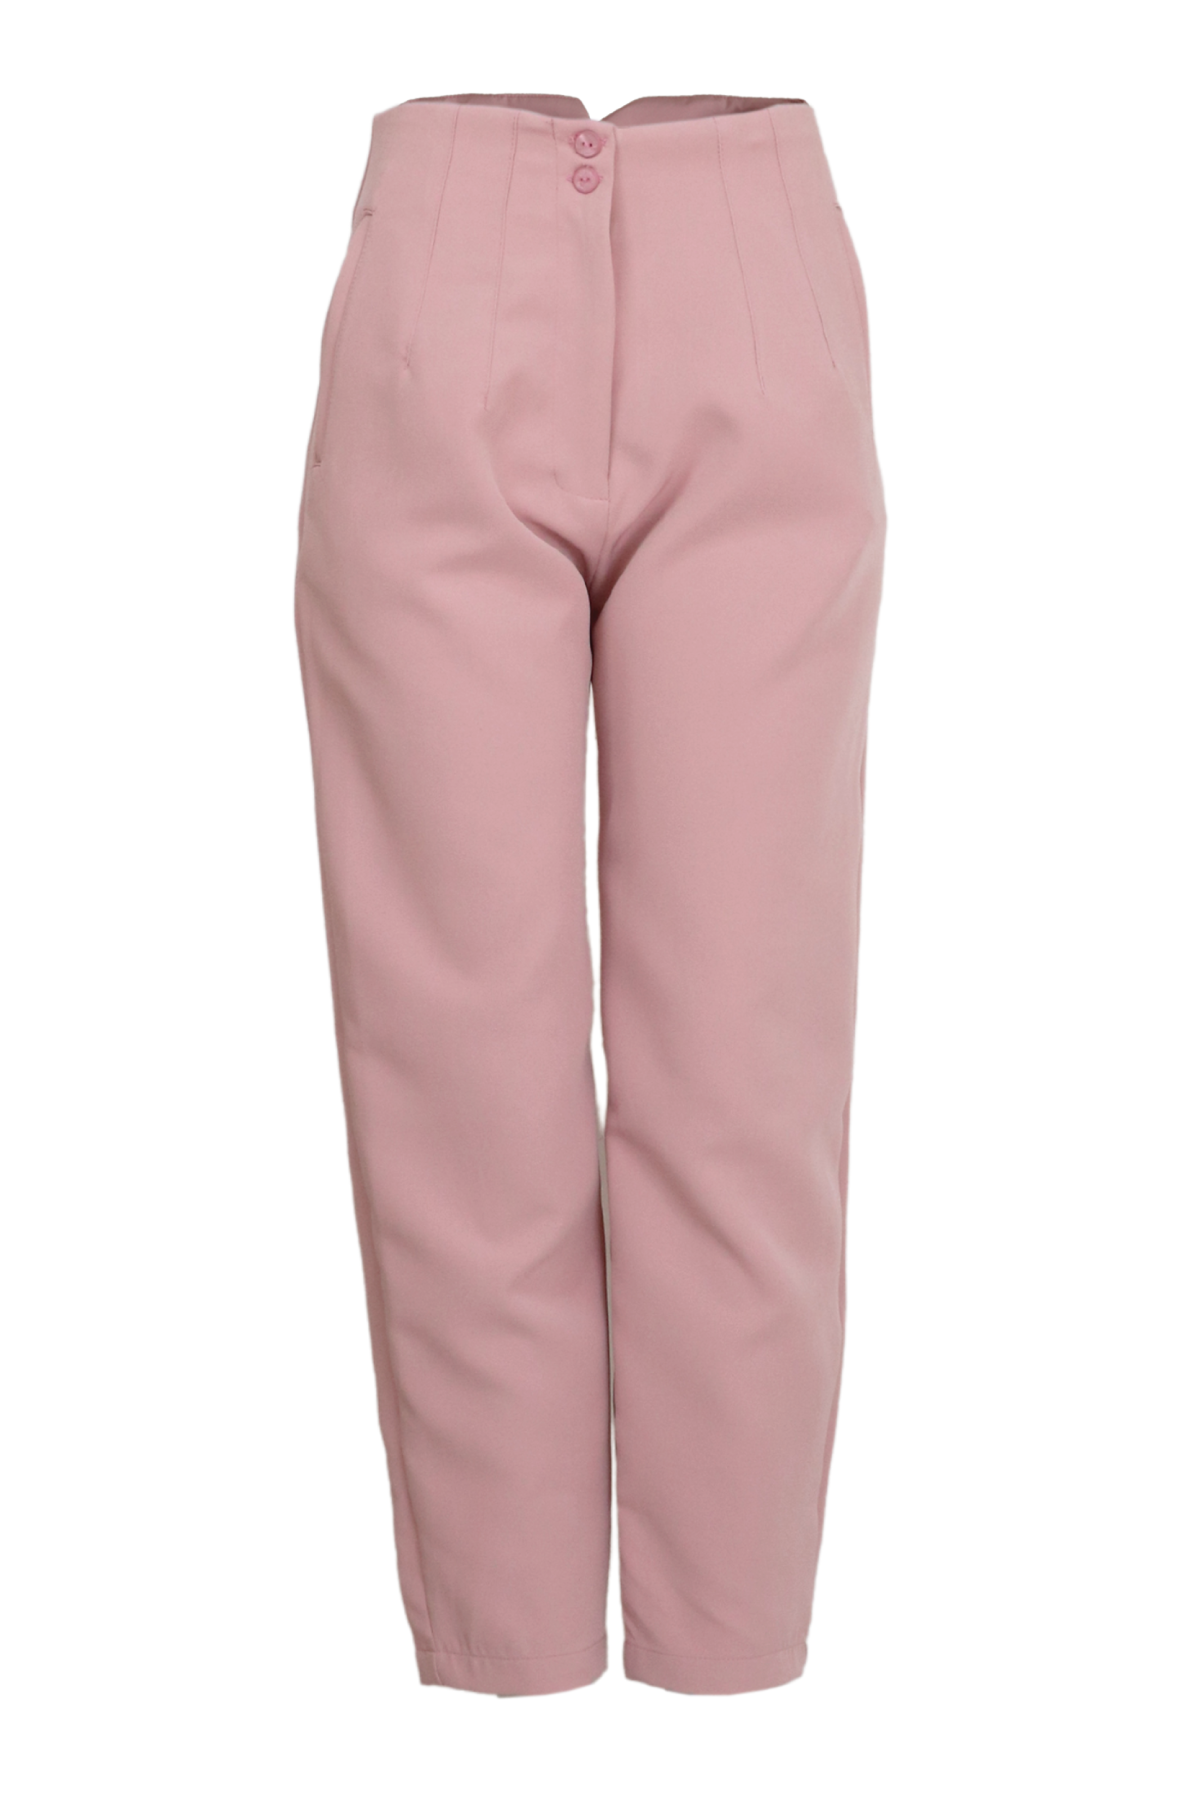 Pantalón rosa para mujer tipo baggy